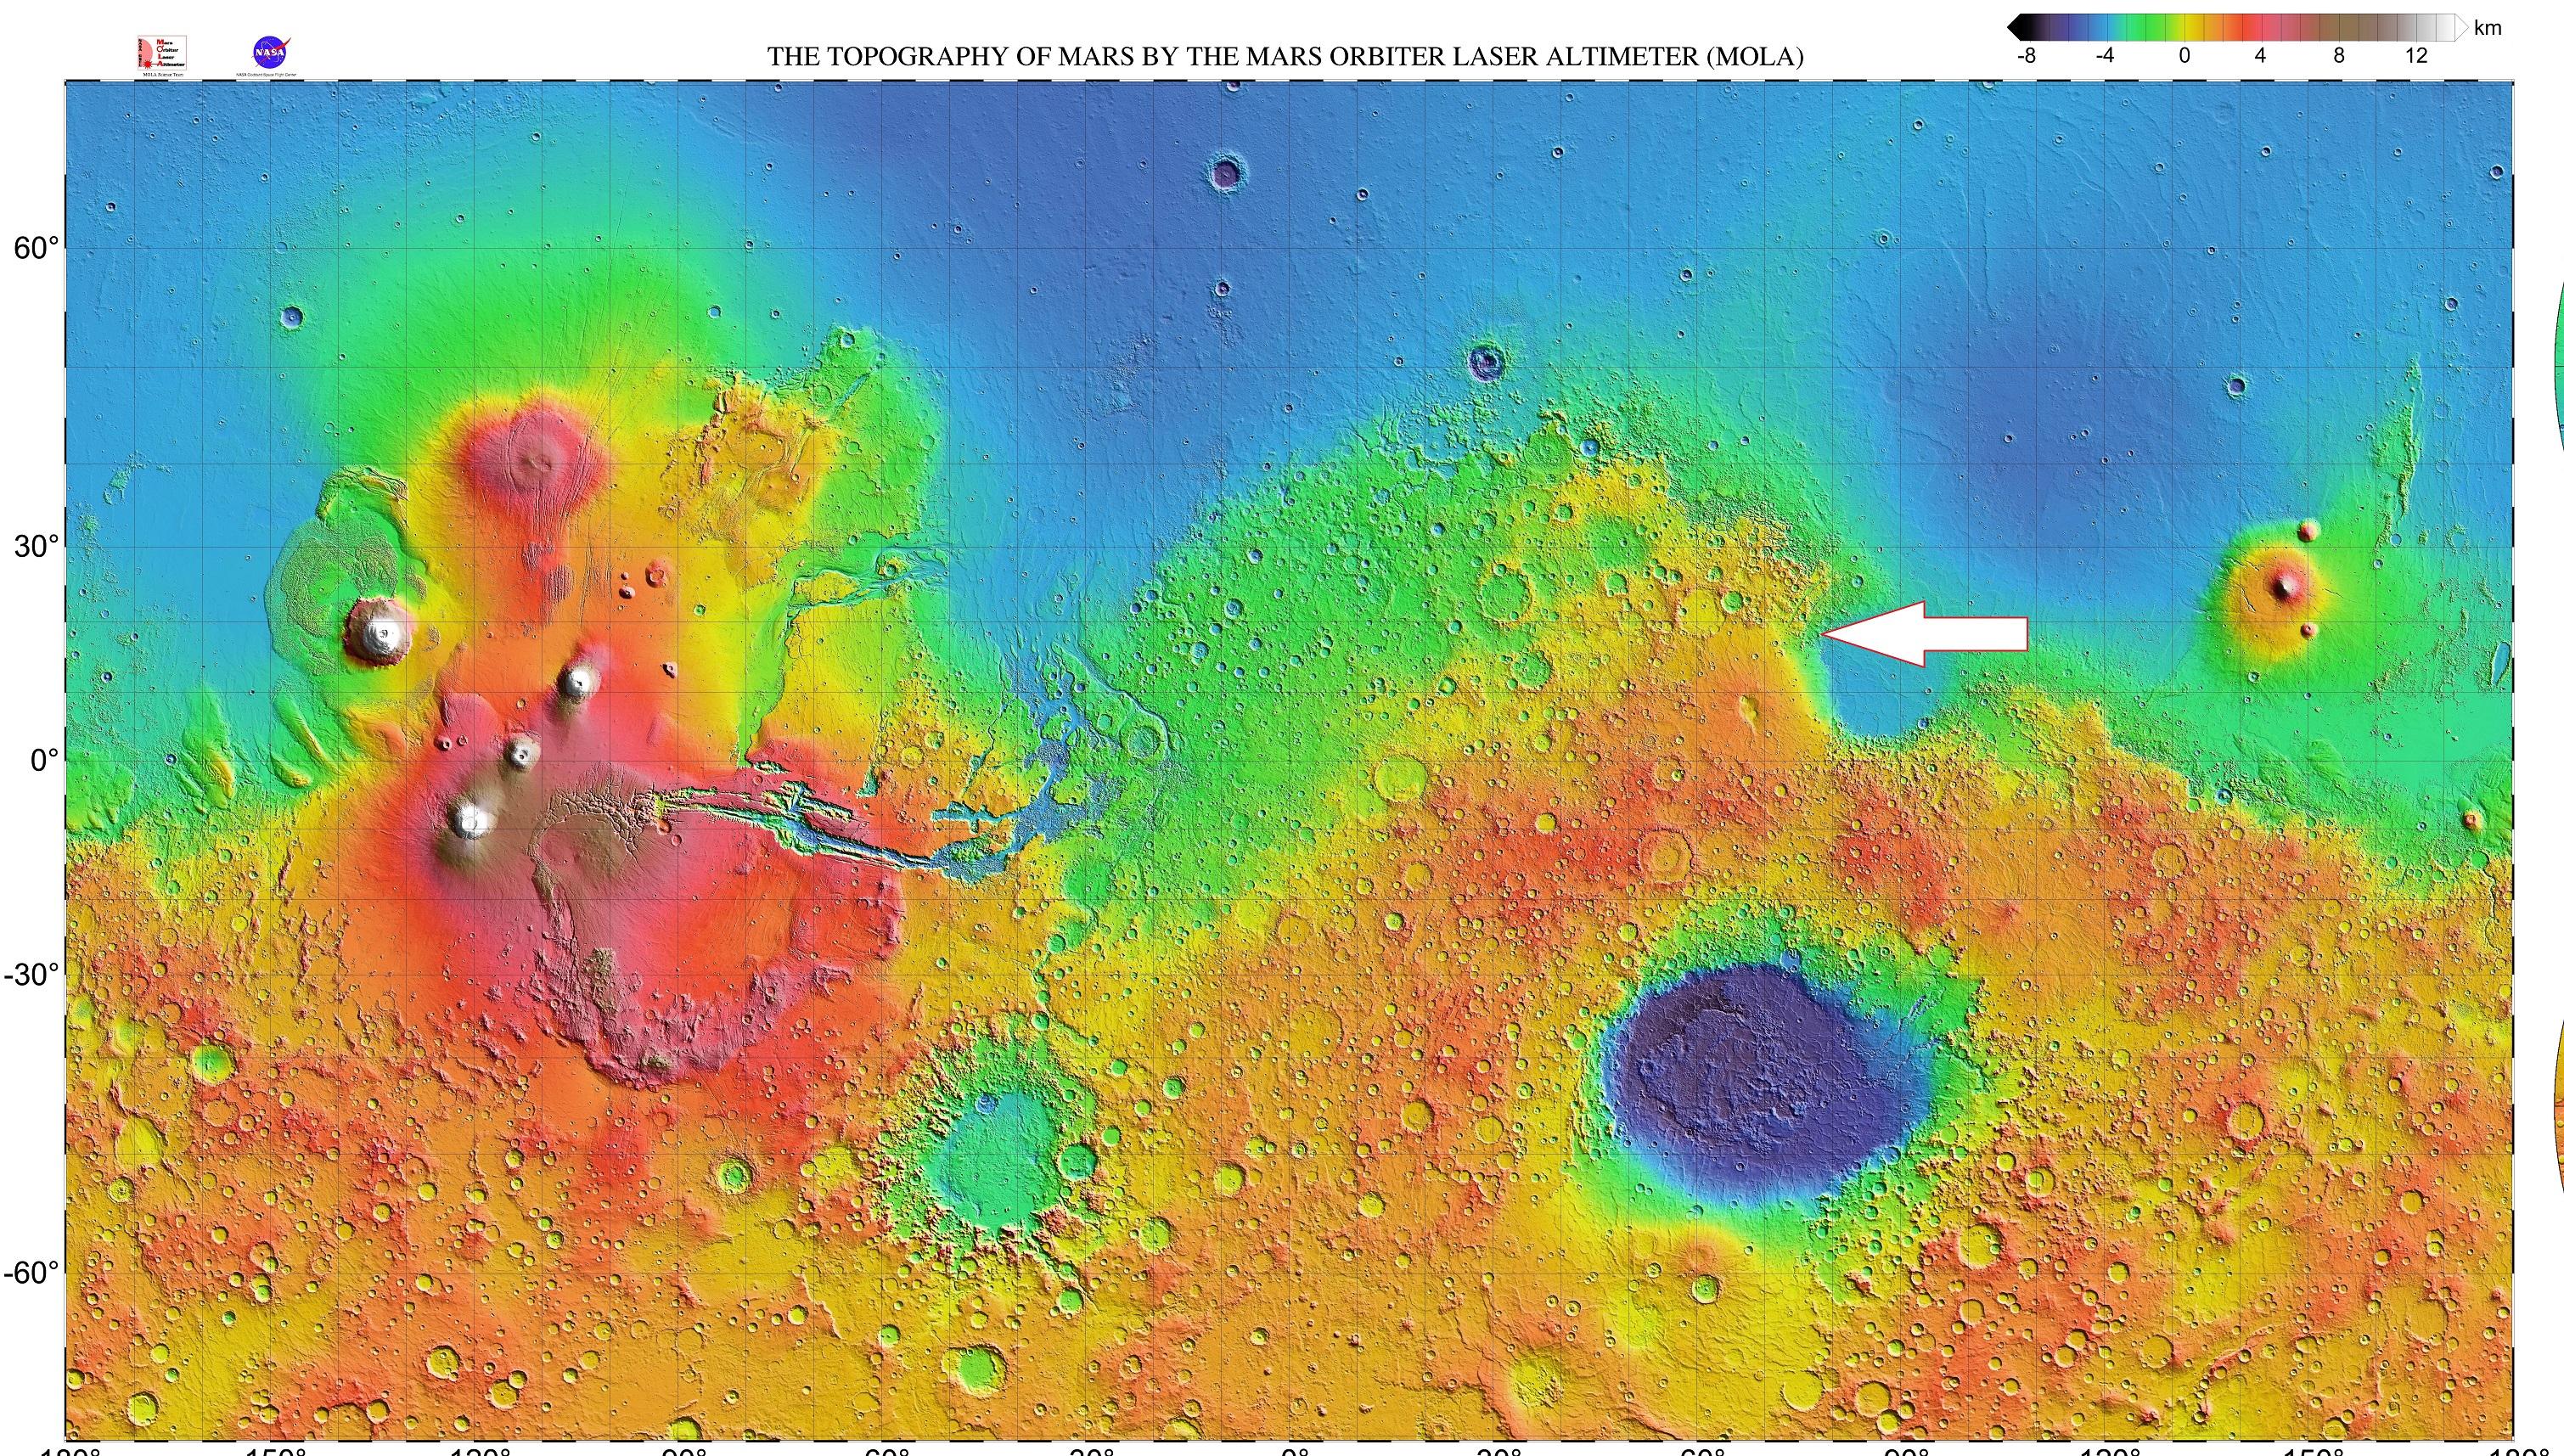 La sonde qui emmène le rover Perseverance devrait atterrir dans le cratère Jezero (flèche blanche), au nord-ouest du bassin d'impact d'Isidis Planitia [Domaine public - NASA / JPL / USGS]